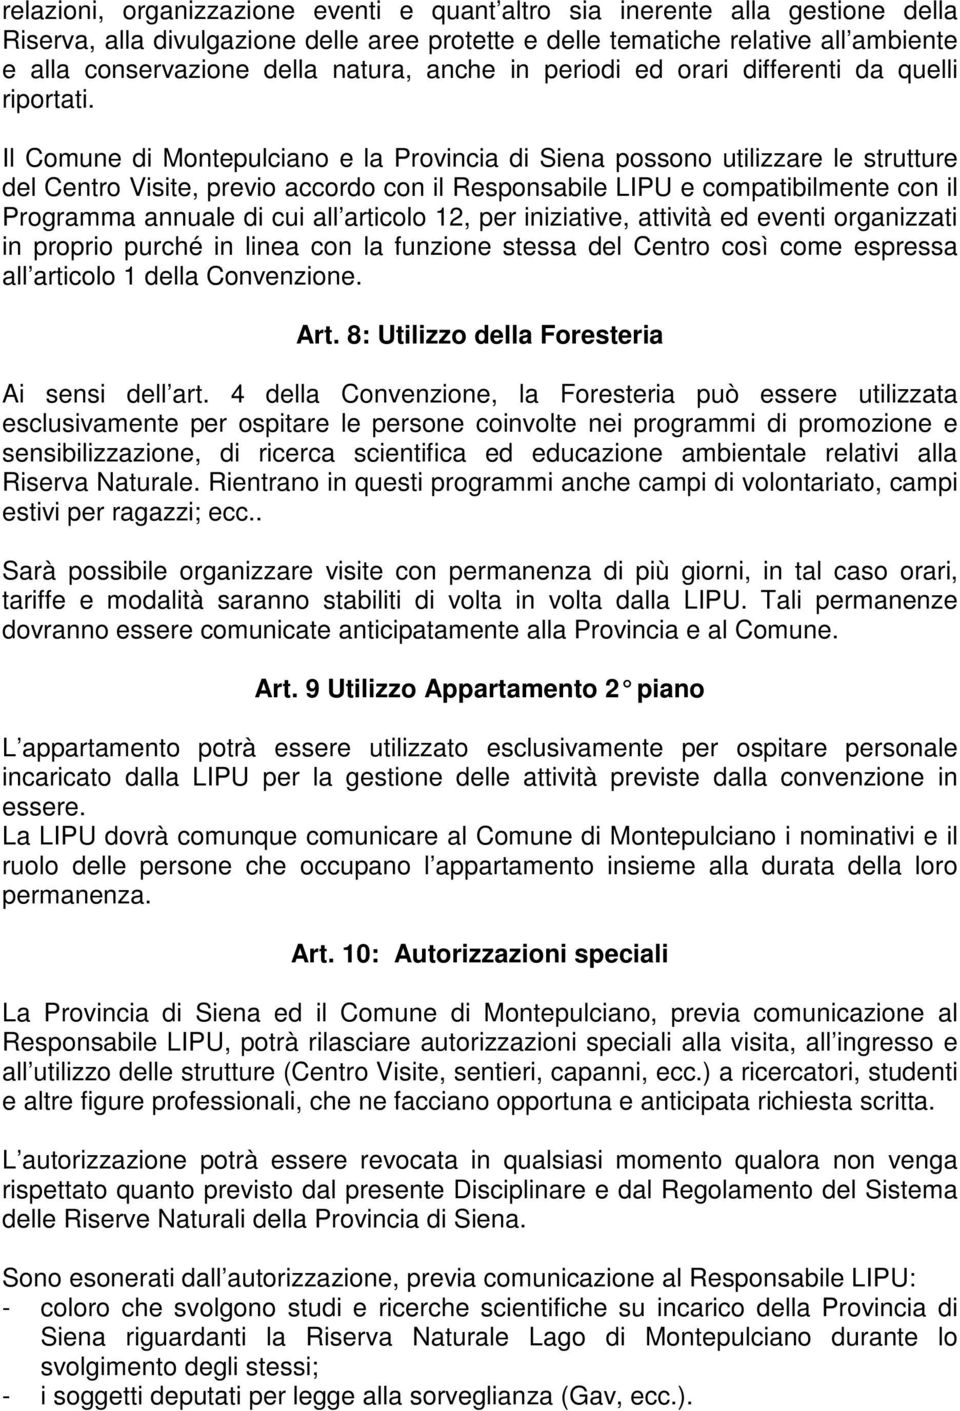 Il Comune di Montepulciano e la Provincia di Siena possono utilizzare le strutture del Centro Visite, previo accordo con il Responsabile LIPU e compatibilmente con il Programma annuale di cui all